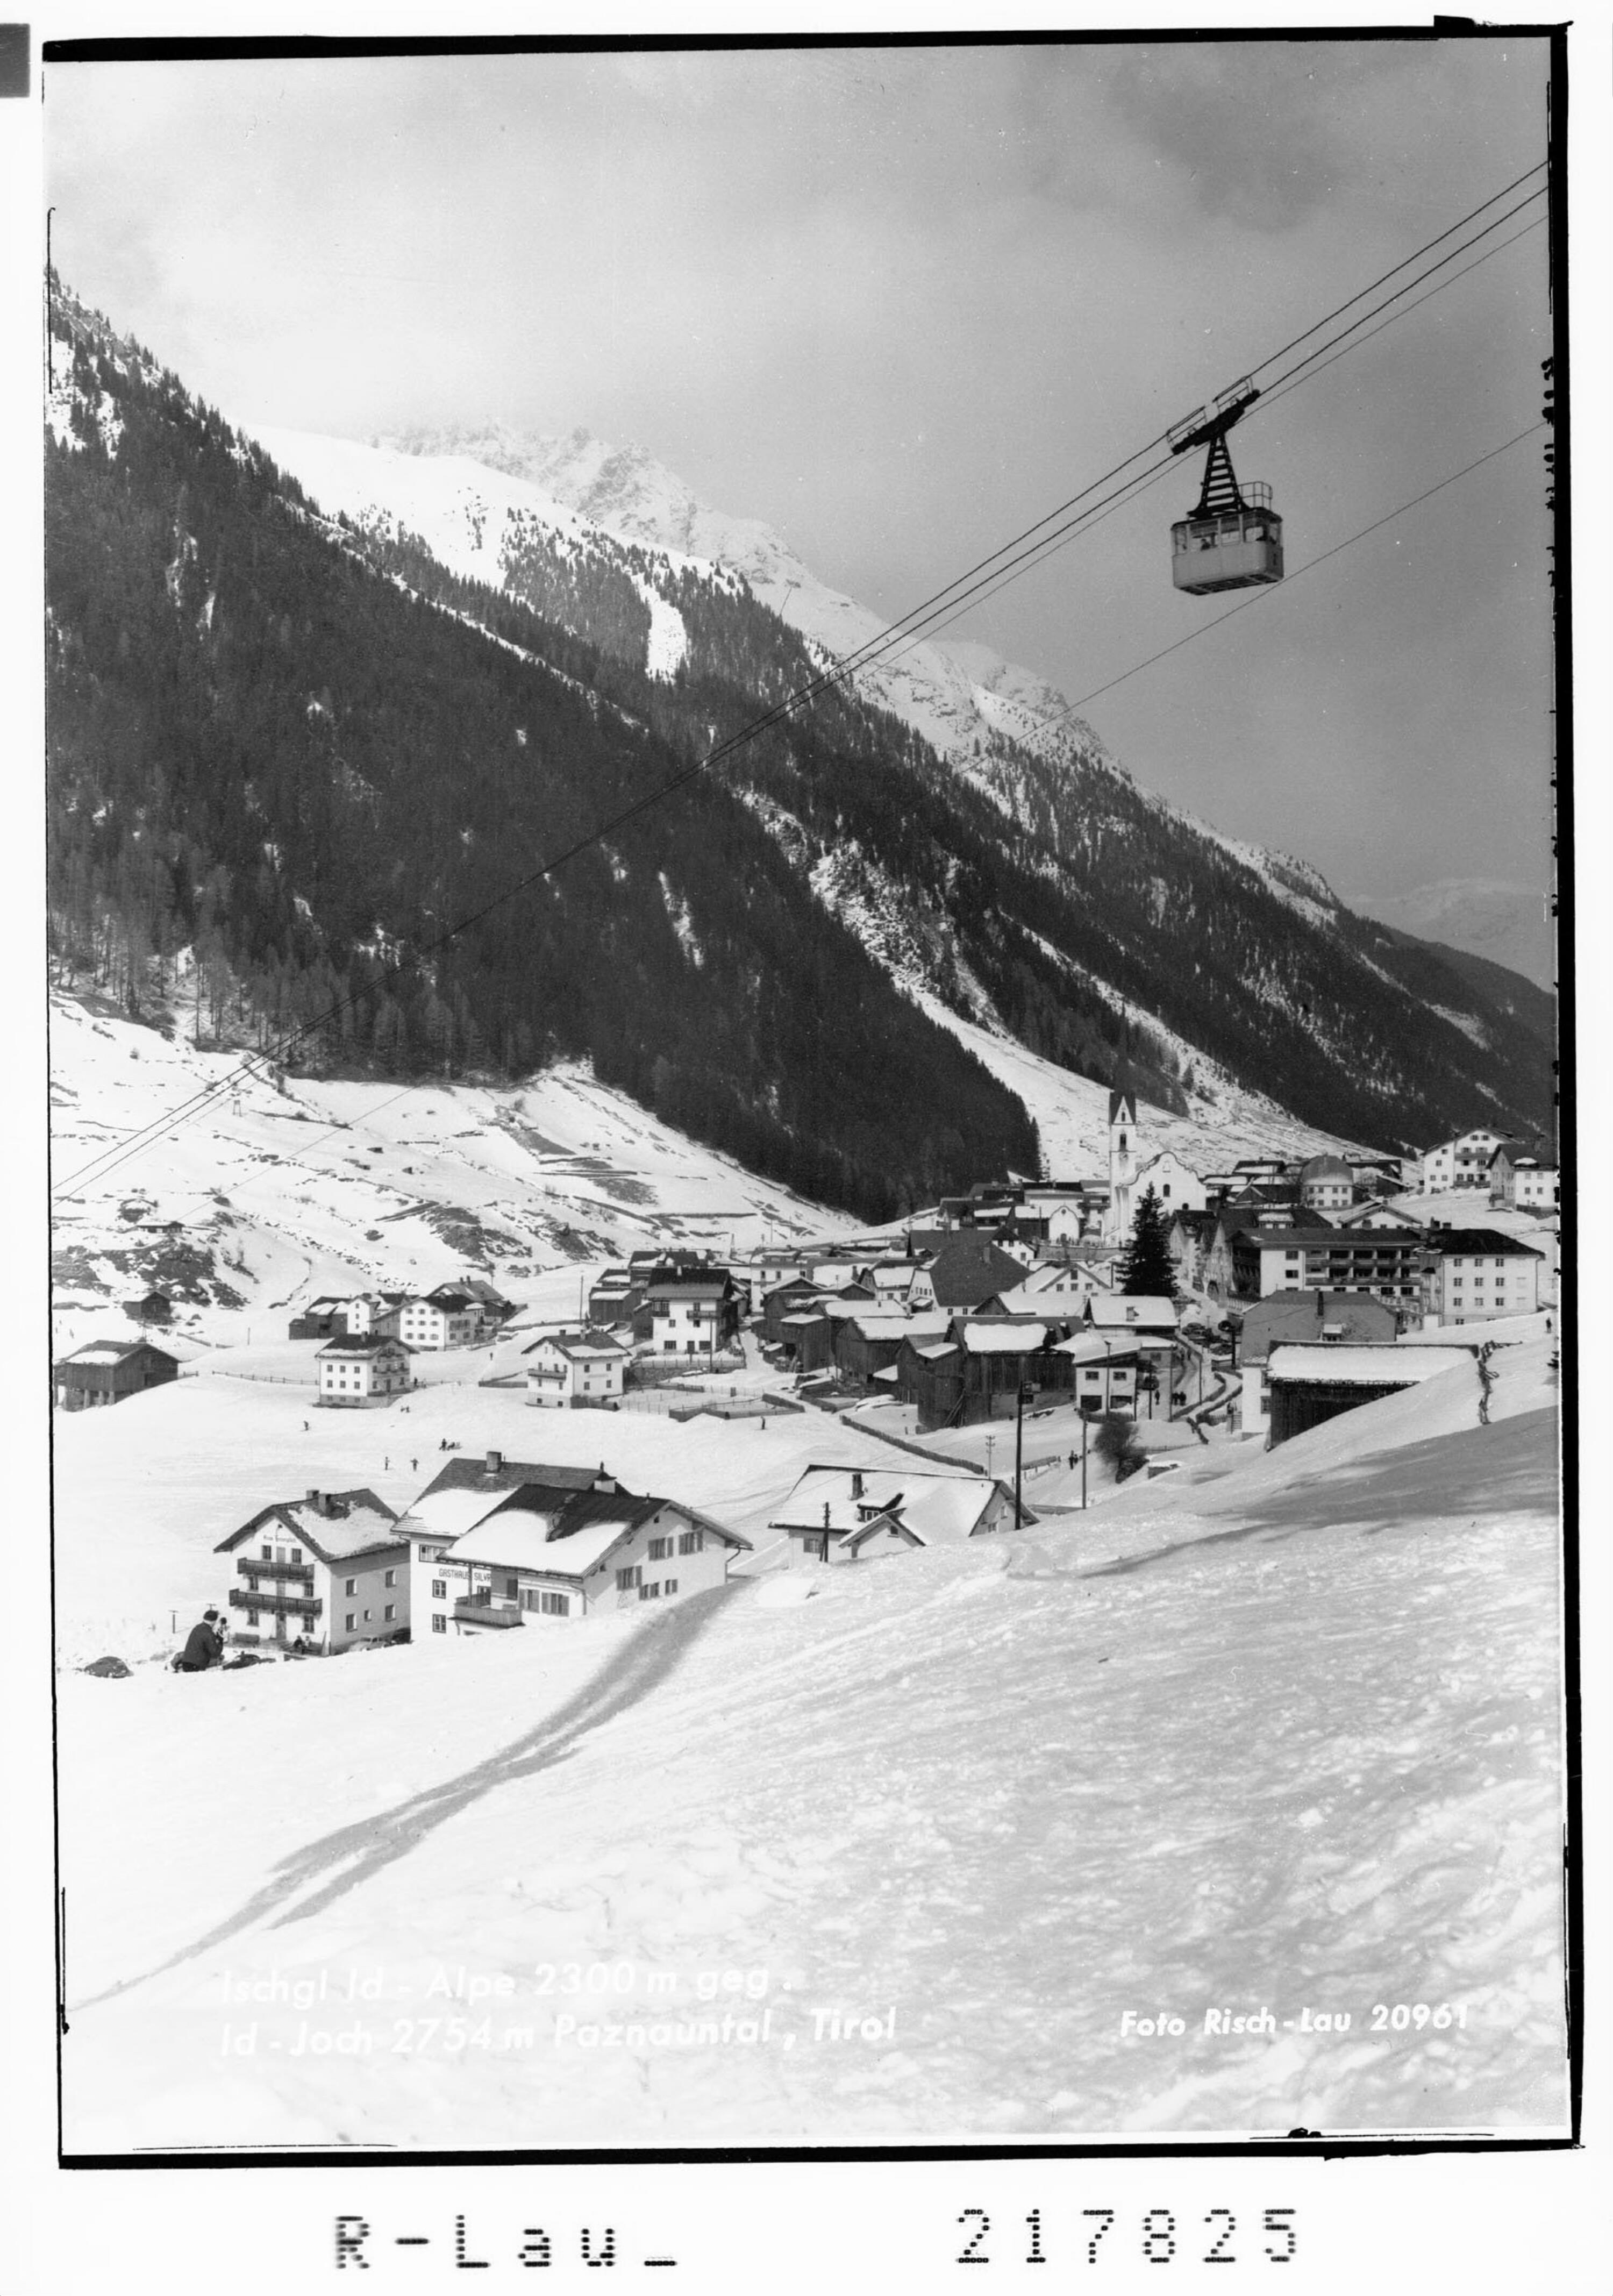 Ischgl Id Alpe 2300 m Idjoch 2754 m Paznauntal, Tirol></div>


    <hr>
    <div class=